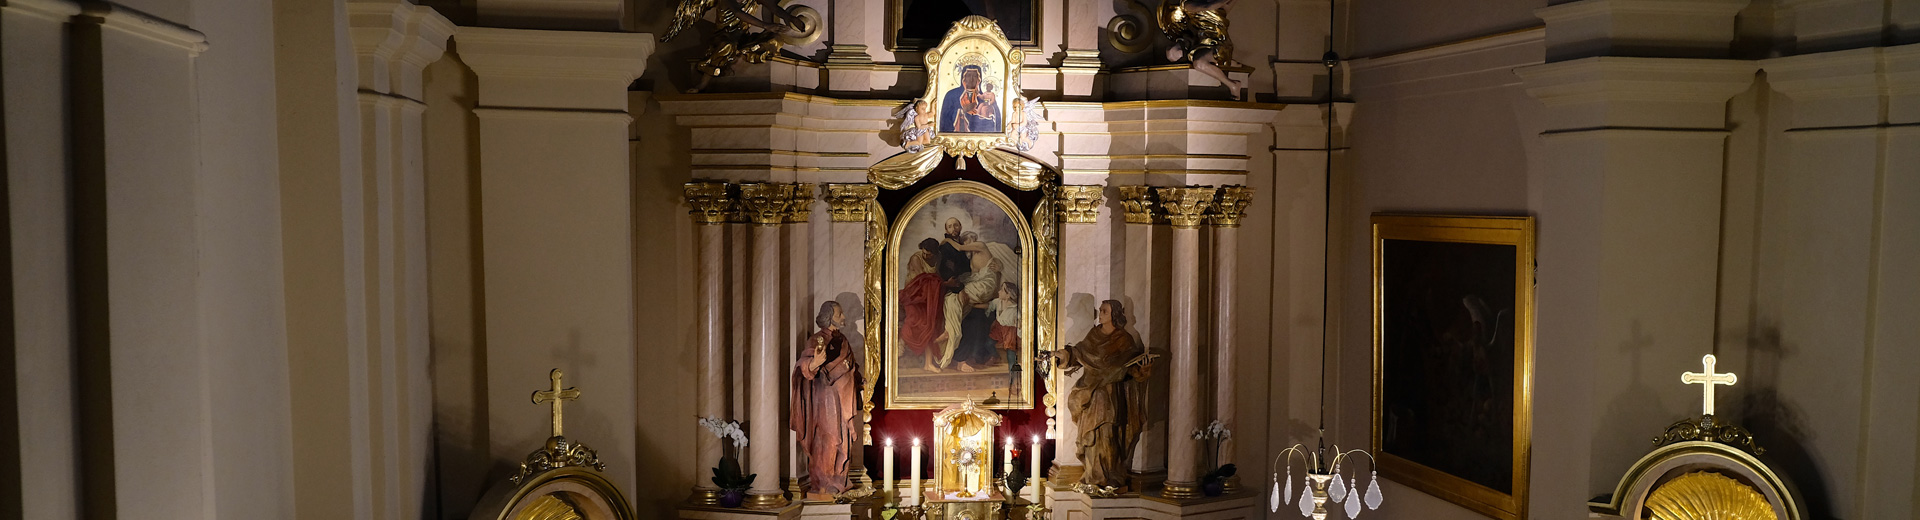 Bonifratrzy – Kościół rektorski pw. św. Jana Bożego i Andrzeja Apostoła